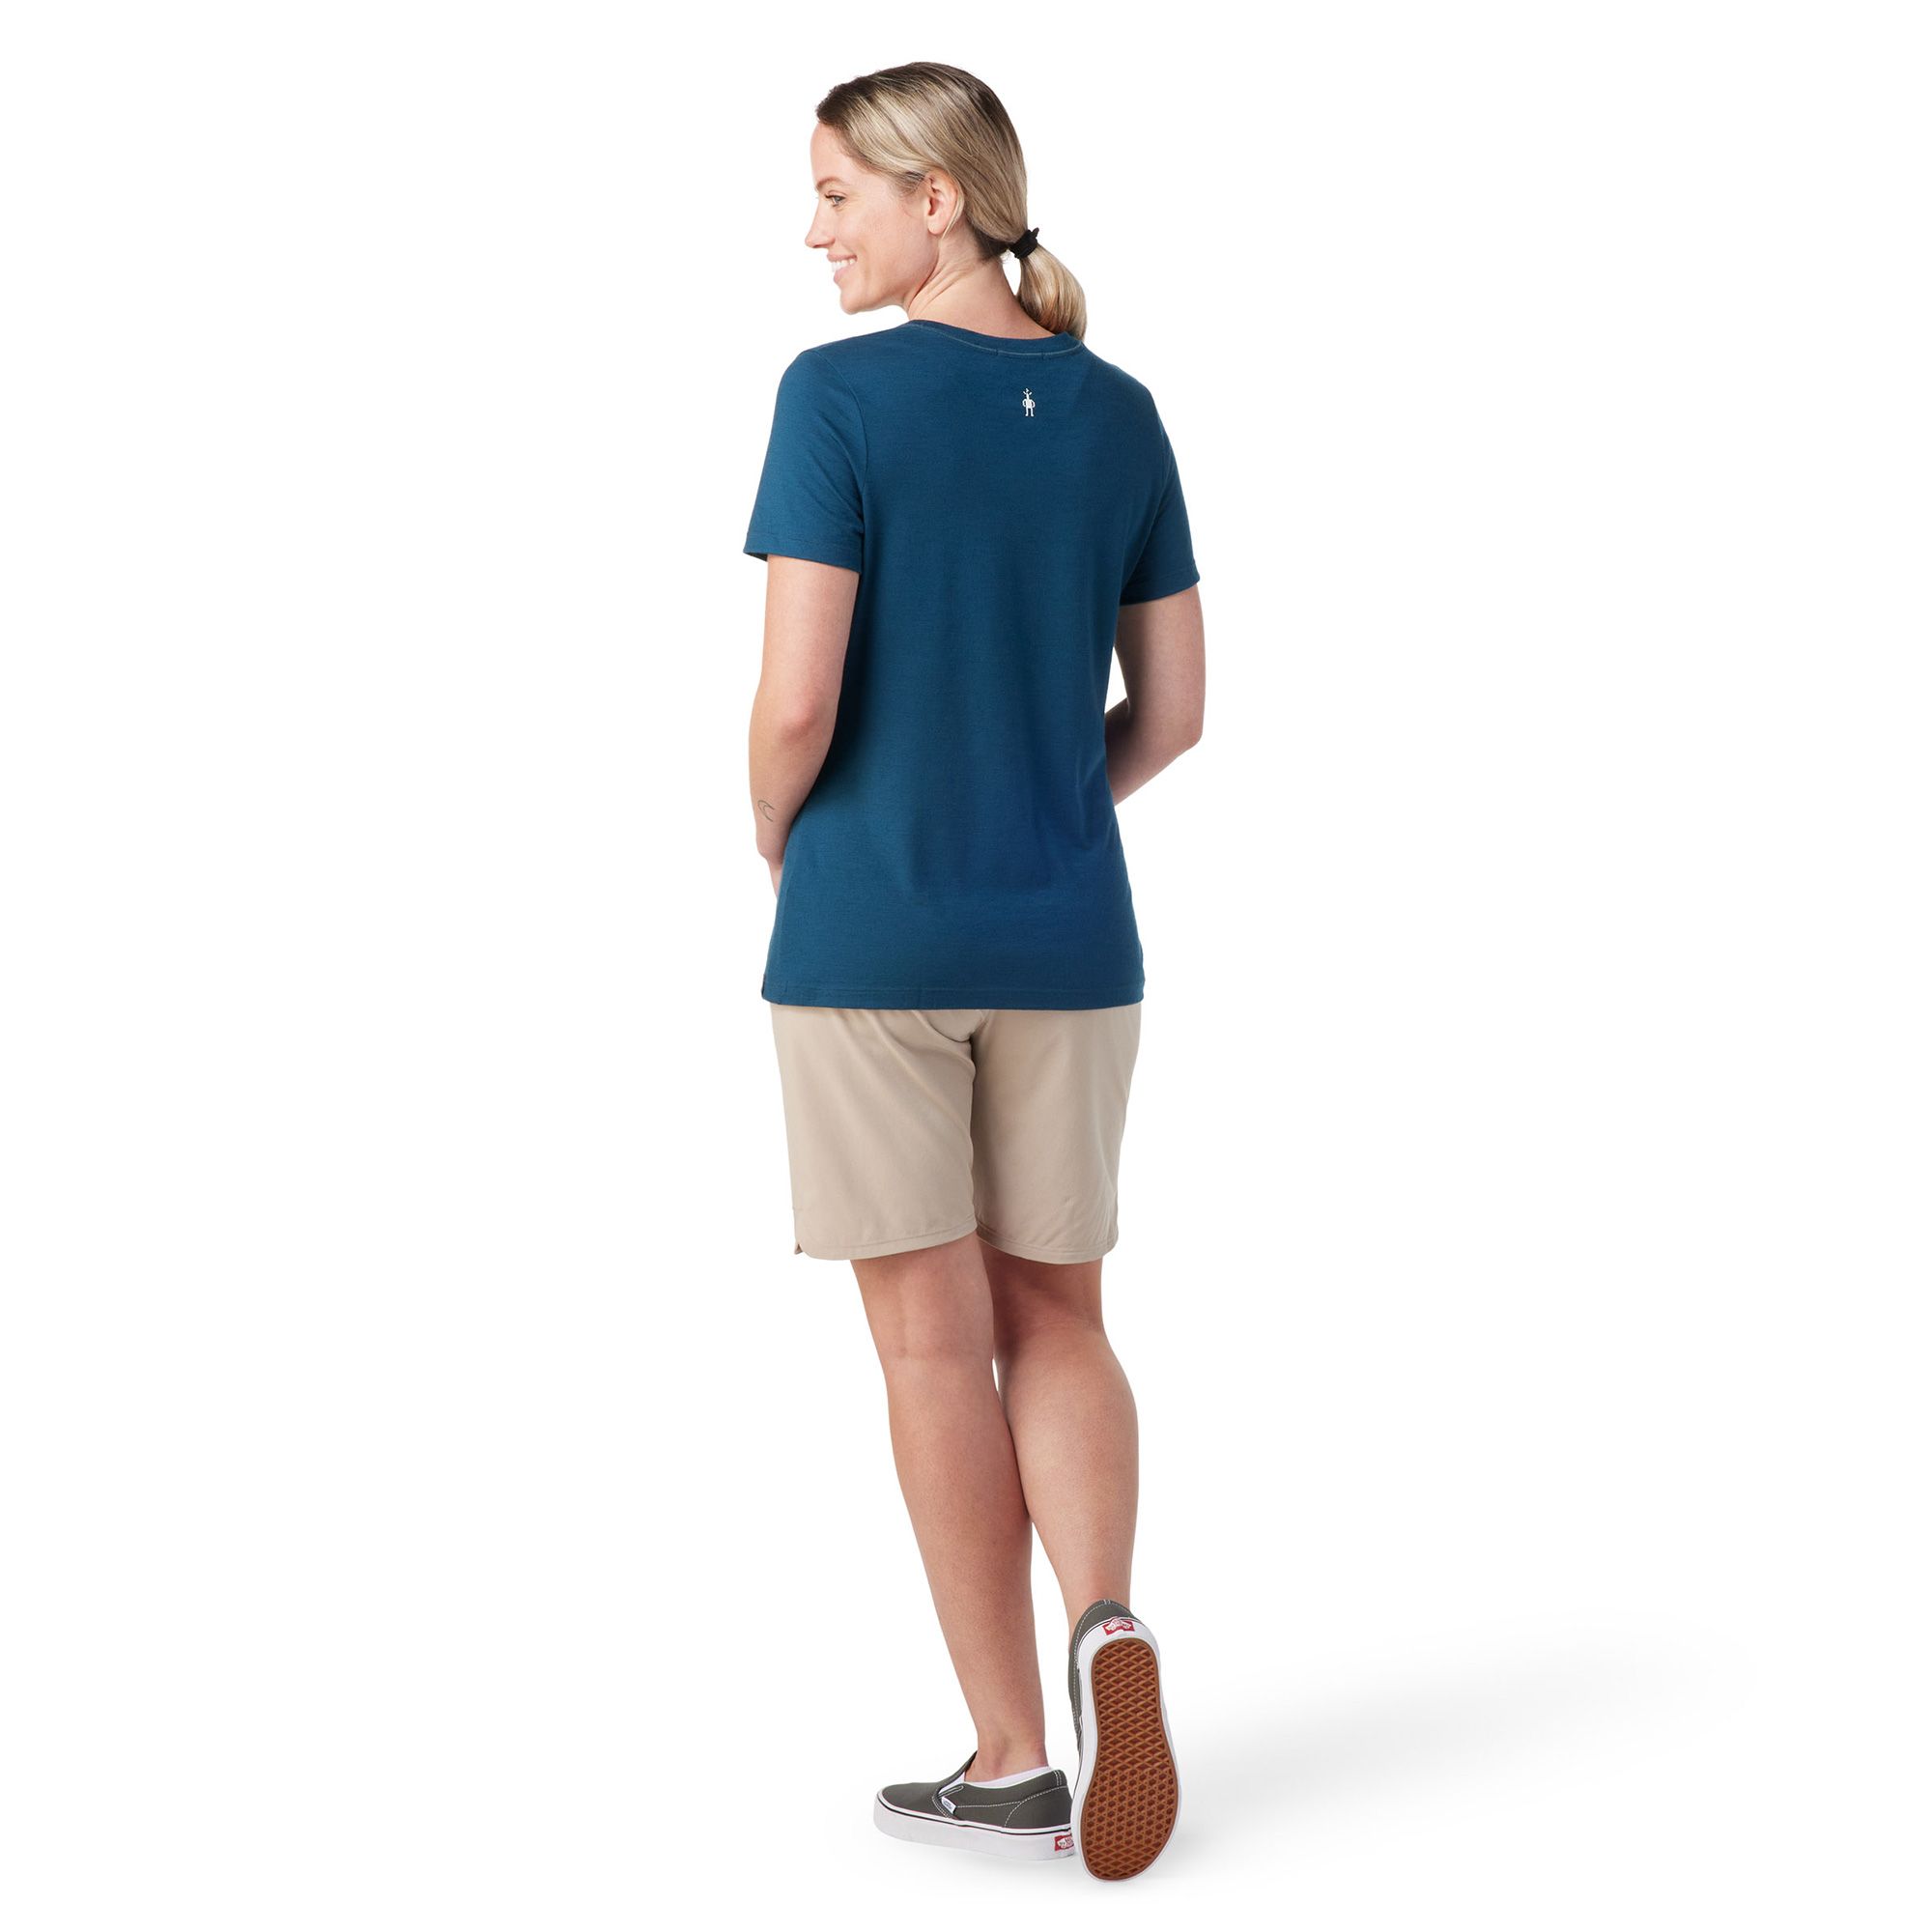 Ell & Voo Womens T-Shirt Size XL Grey Logo Short Sleeve Crew Neck Top